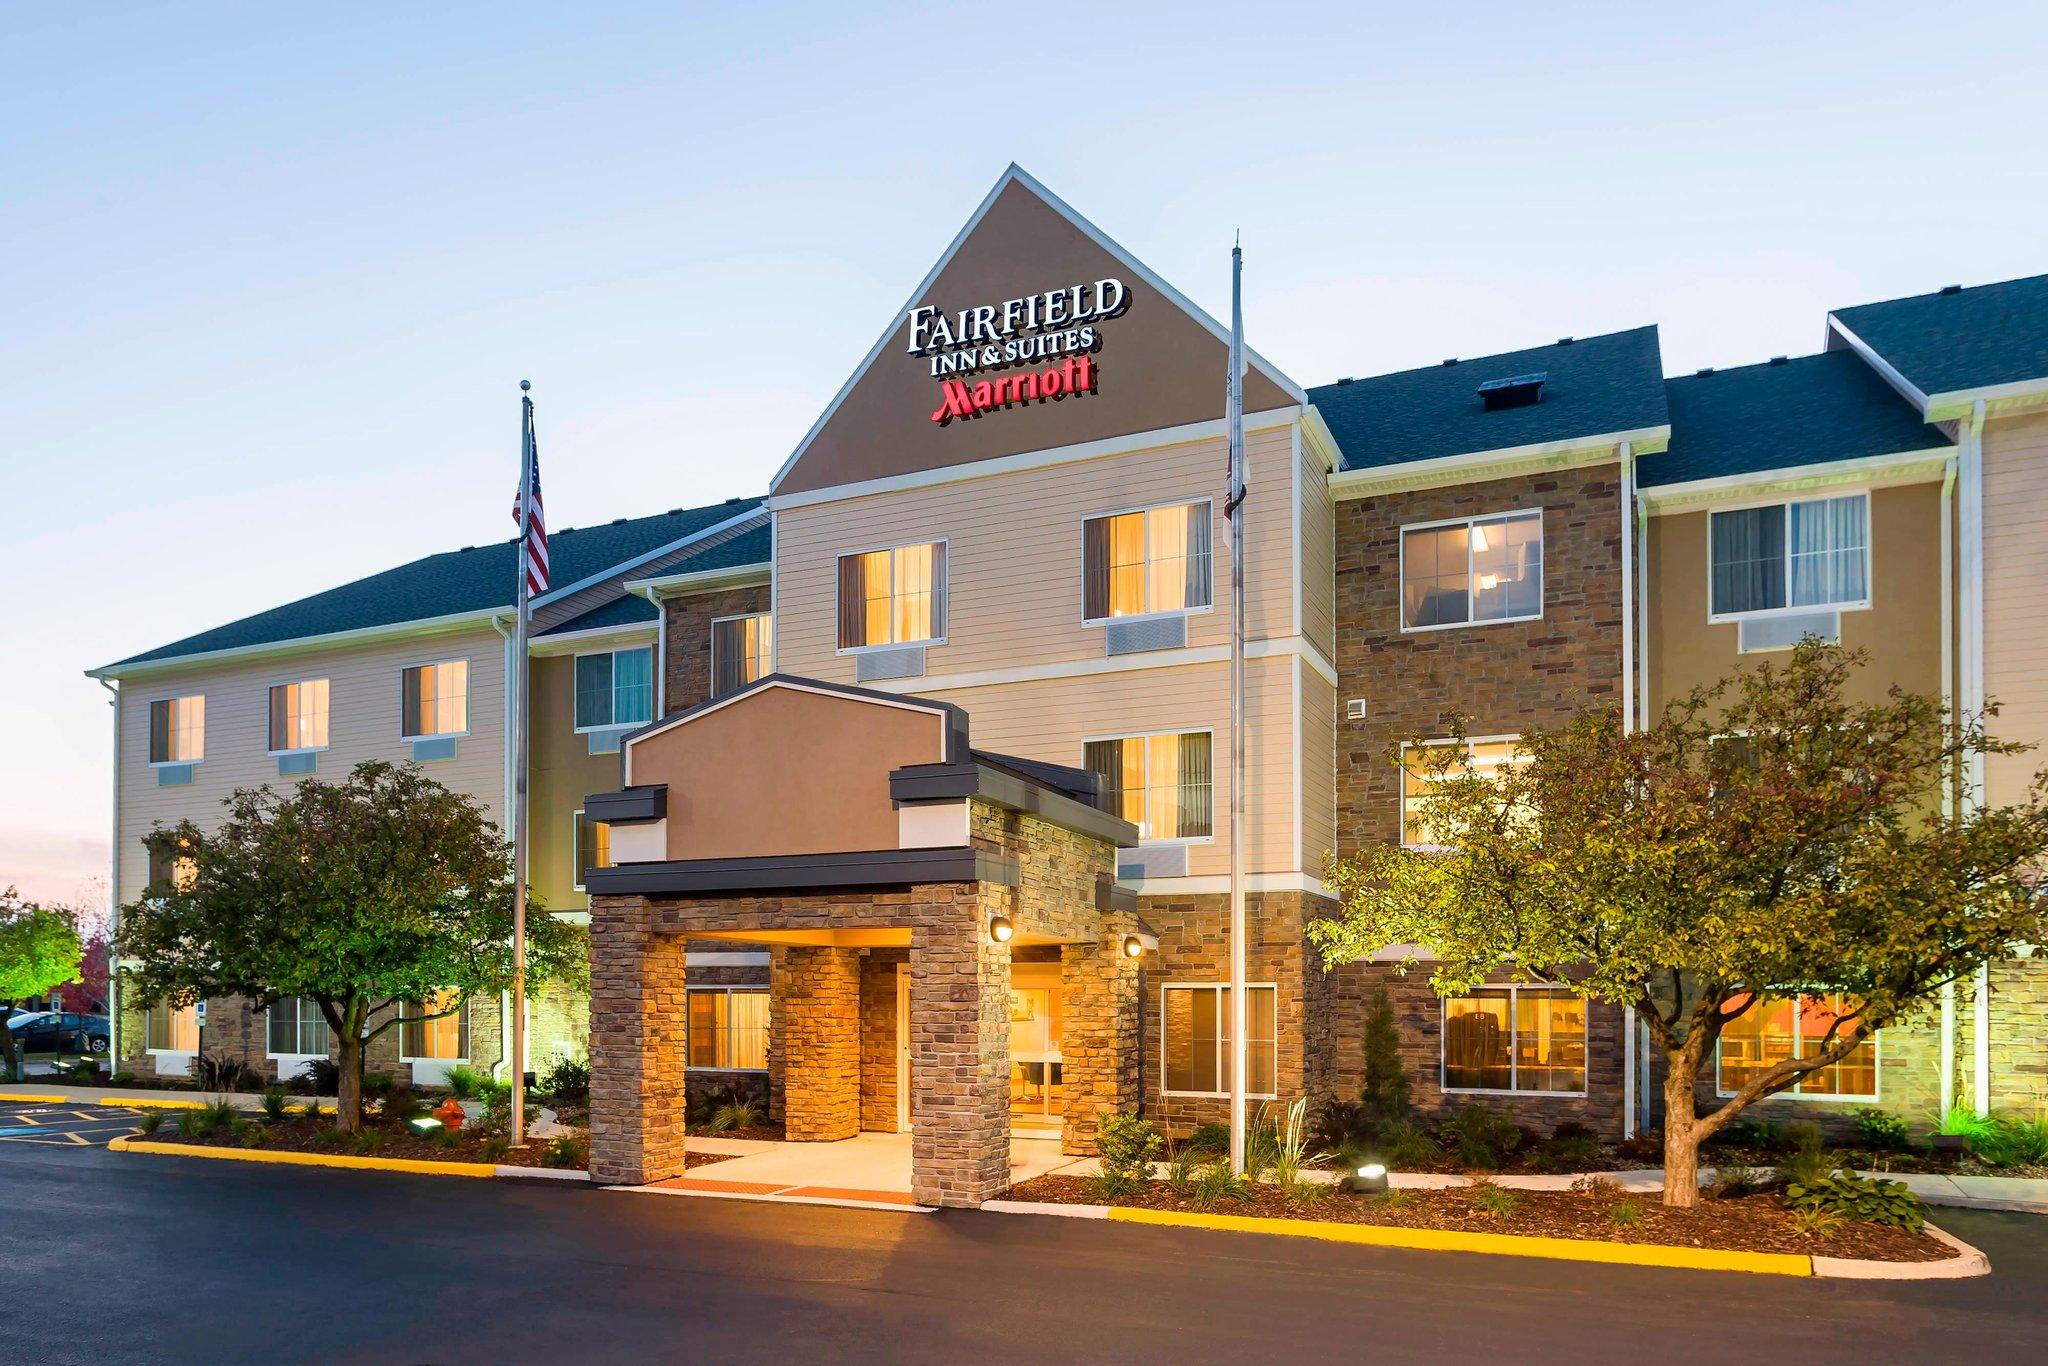 Fairfield Inn & Suites Chicago Naperville/Aurora in Naperville, IL